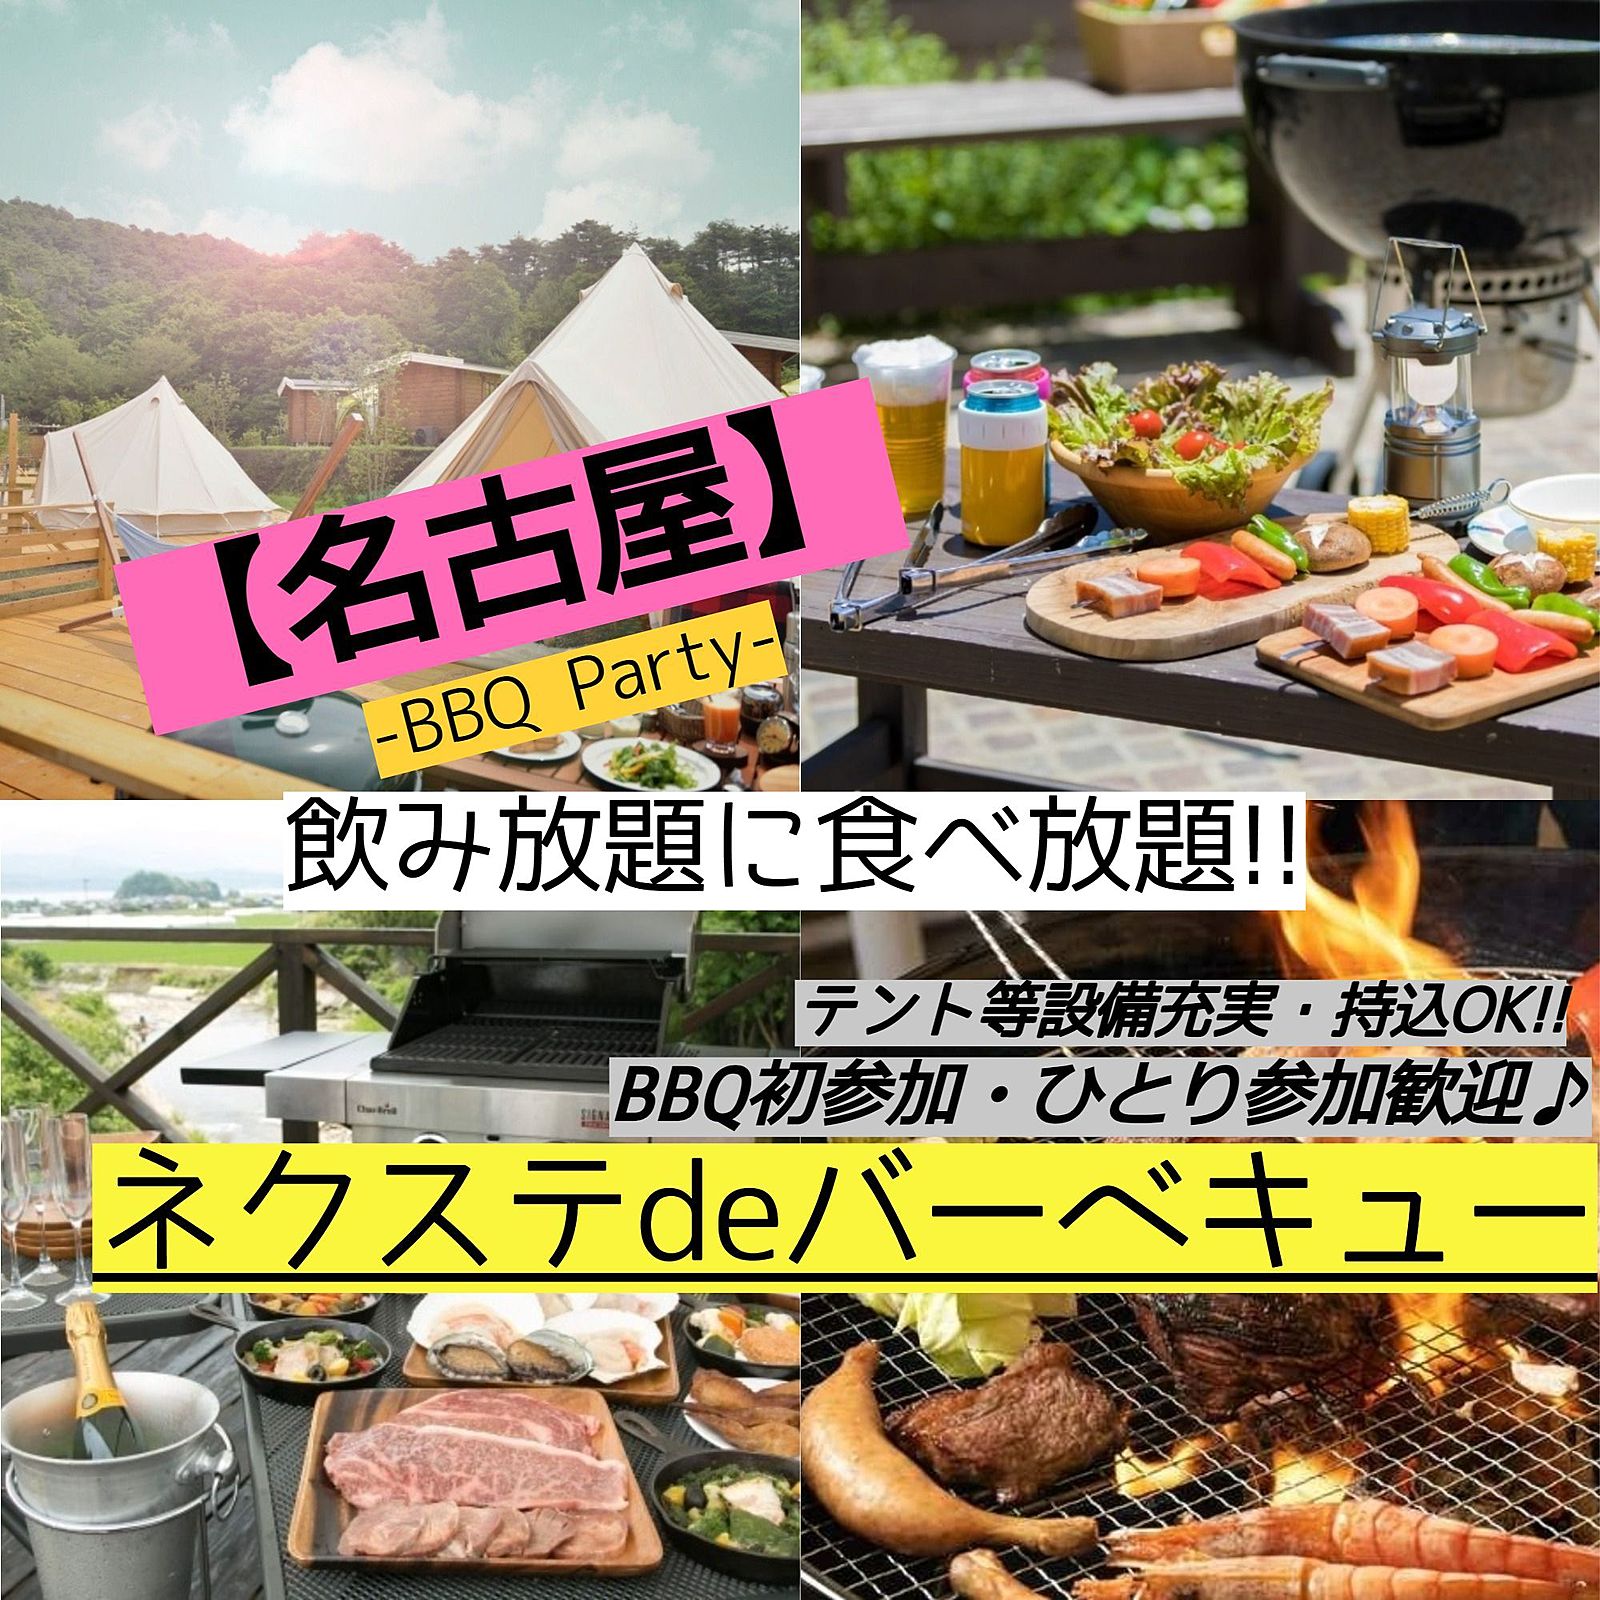 8月27日(日曜)【毎月2回開催・名古屋市内・BBQ】飲み・食べ放題!!素敵に本格的なBBQ♪【ネクステdeバーベキュー会】